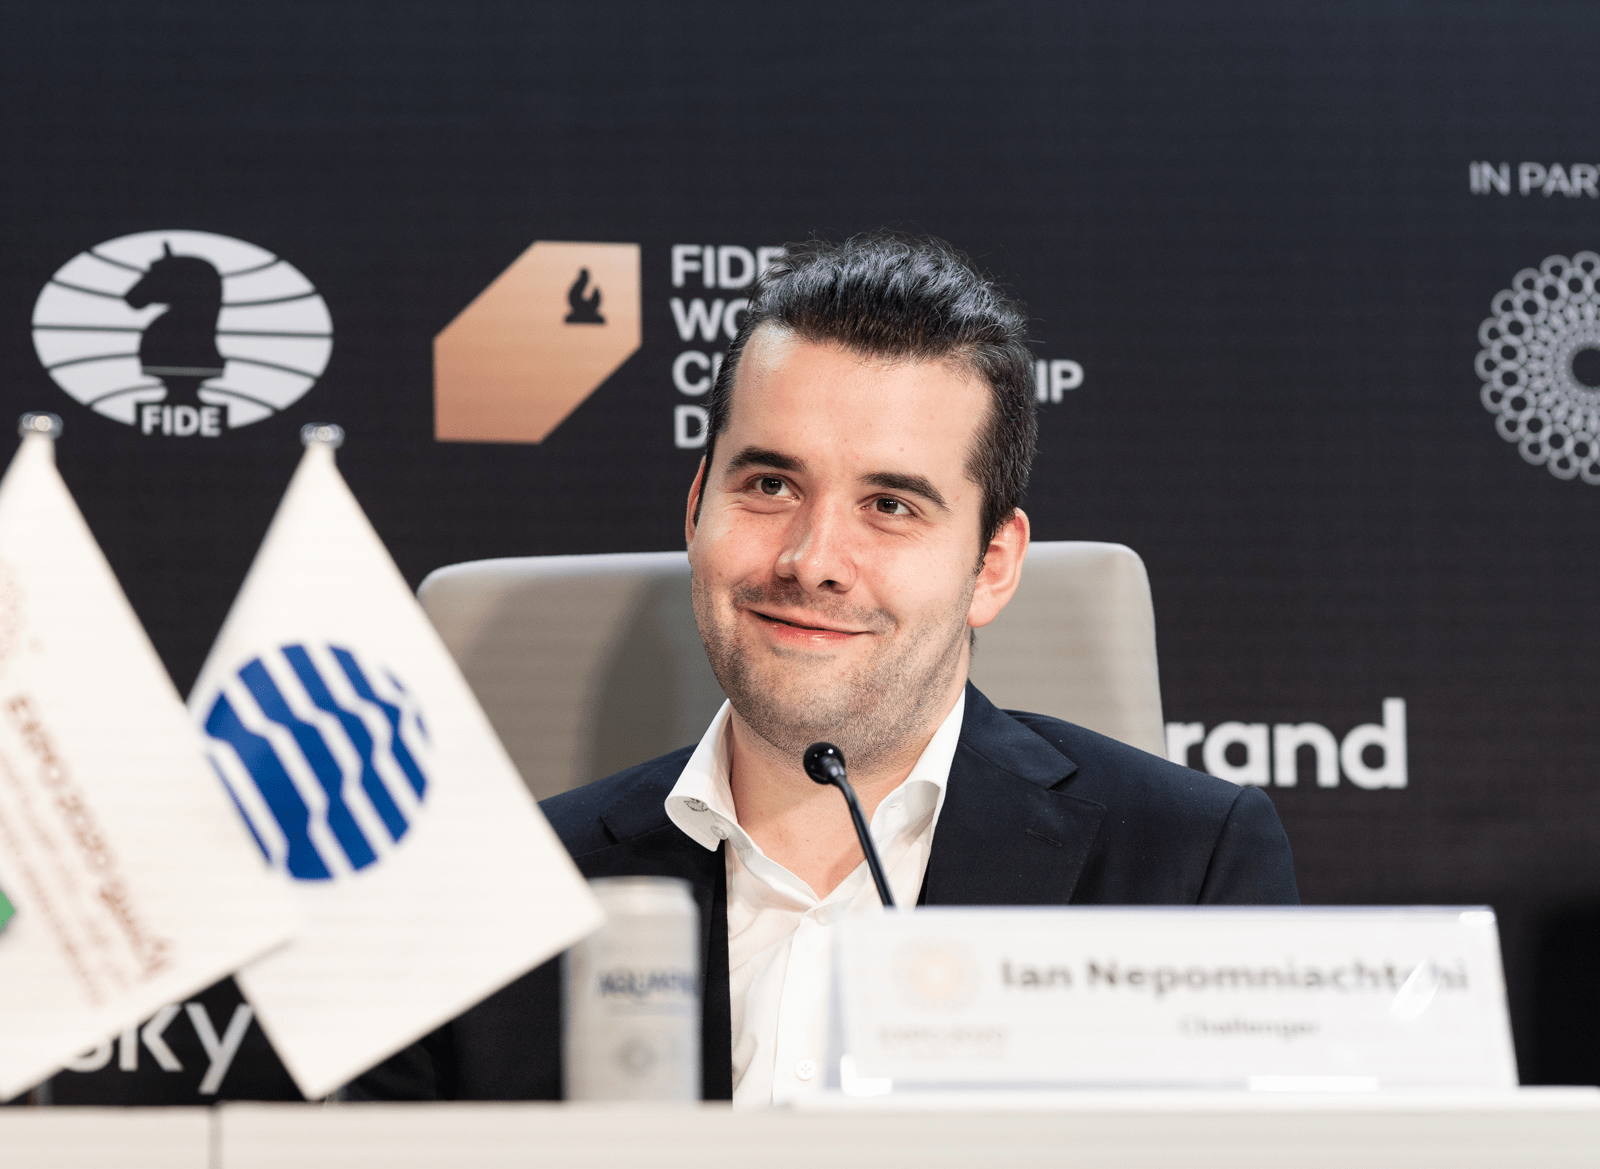 Schach WM 2021 - Carlsen vs. Nepomnjachtchi: Spielplan & Wettquoten